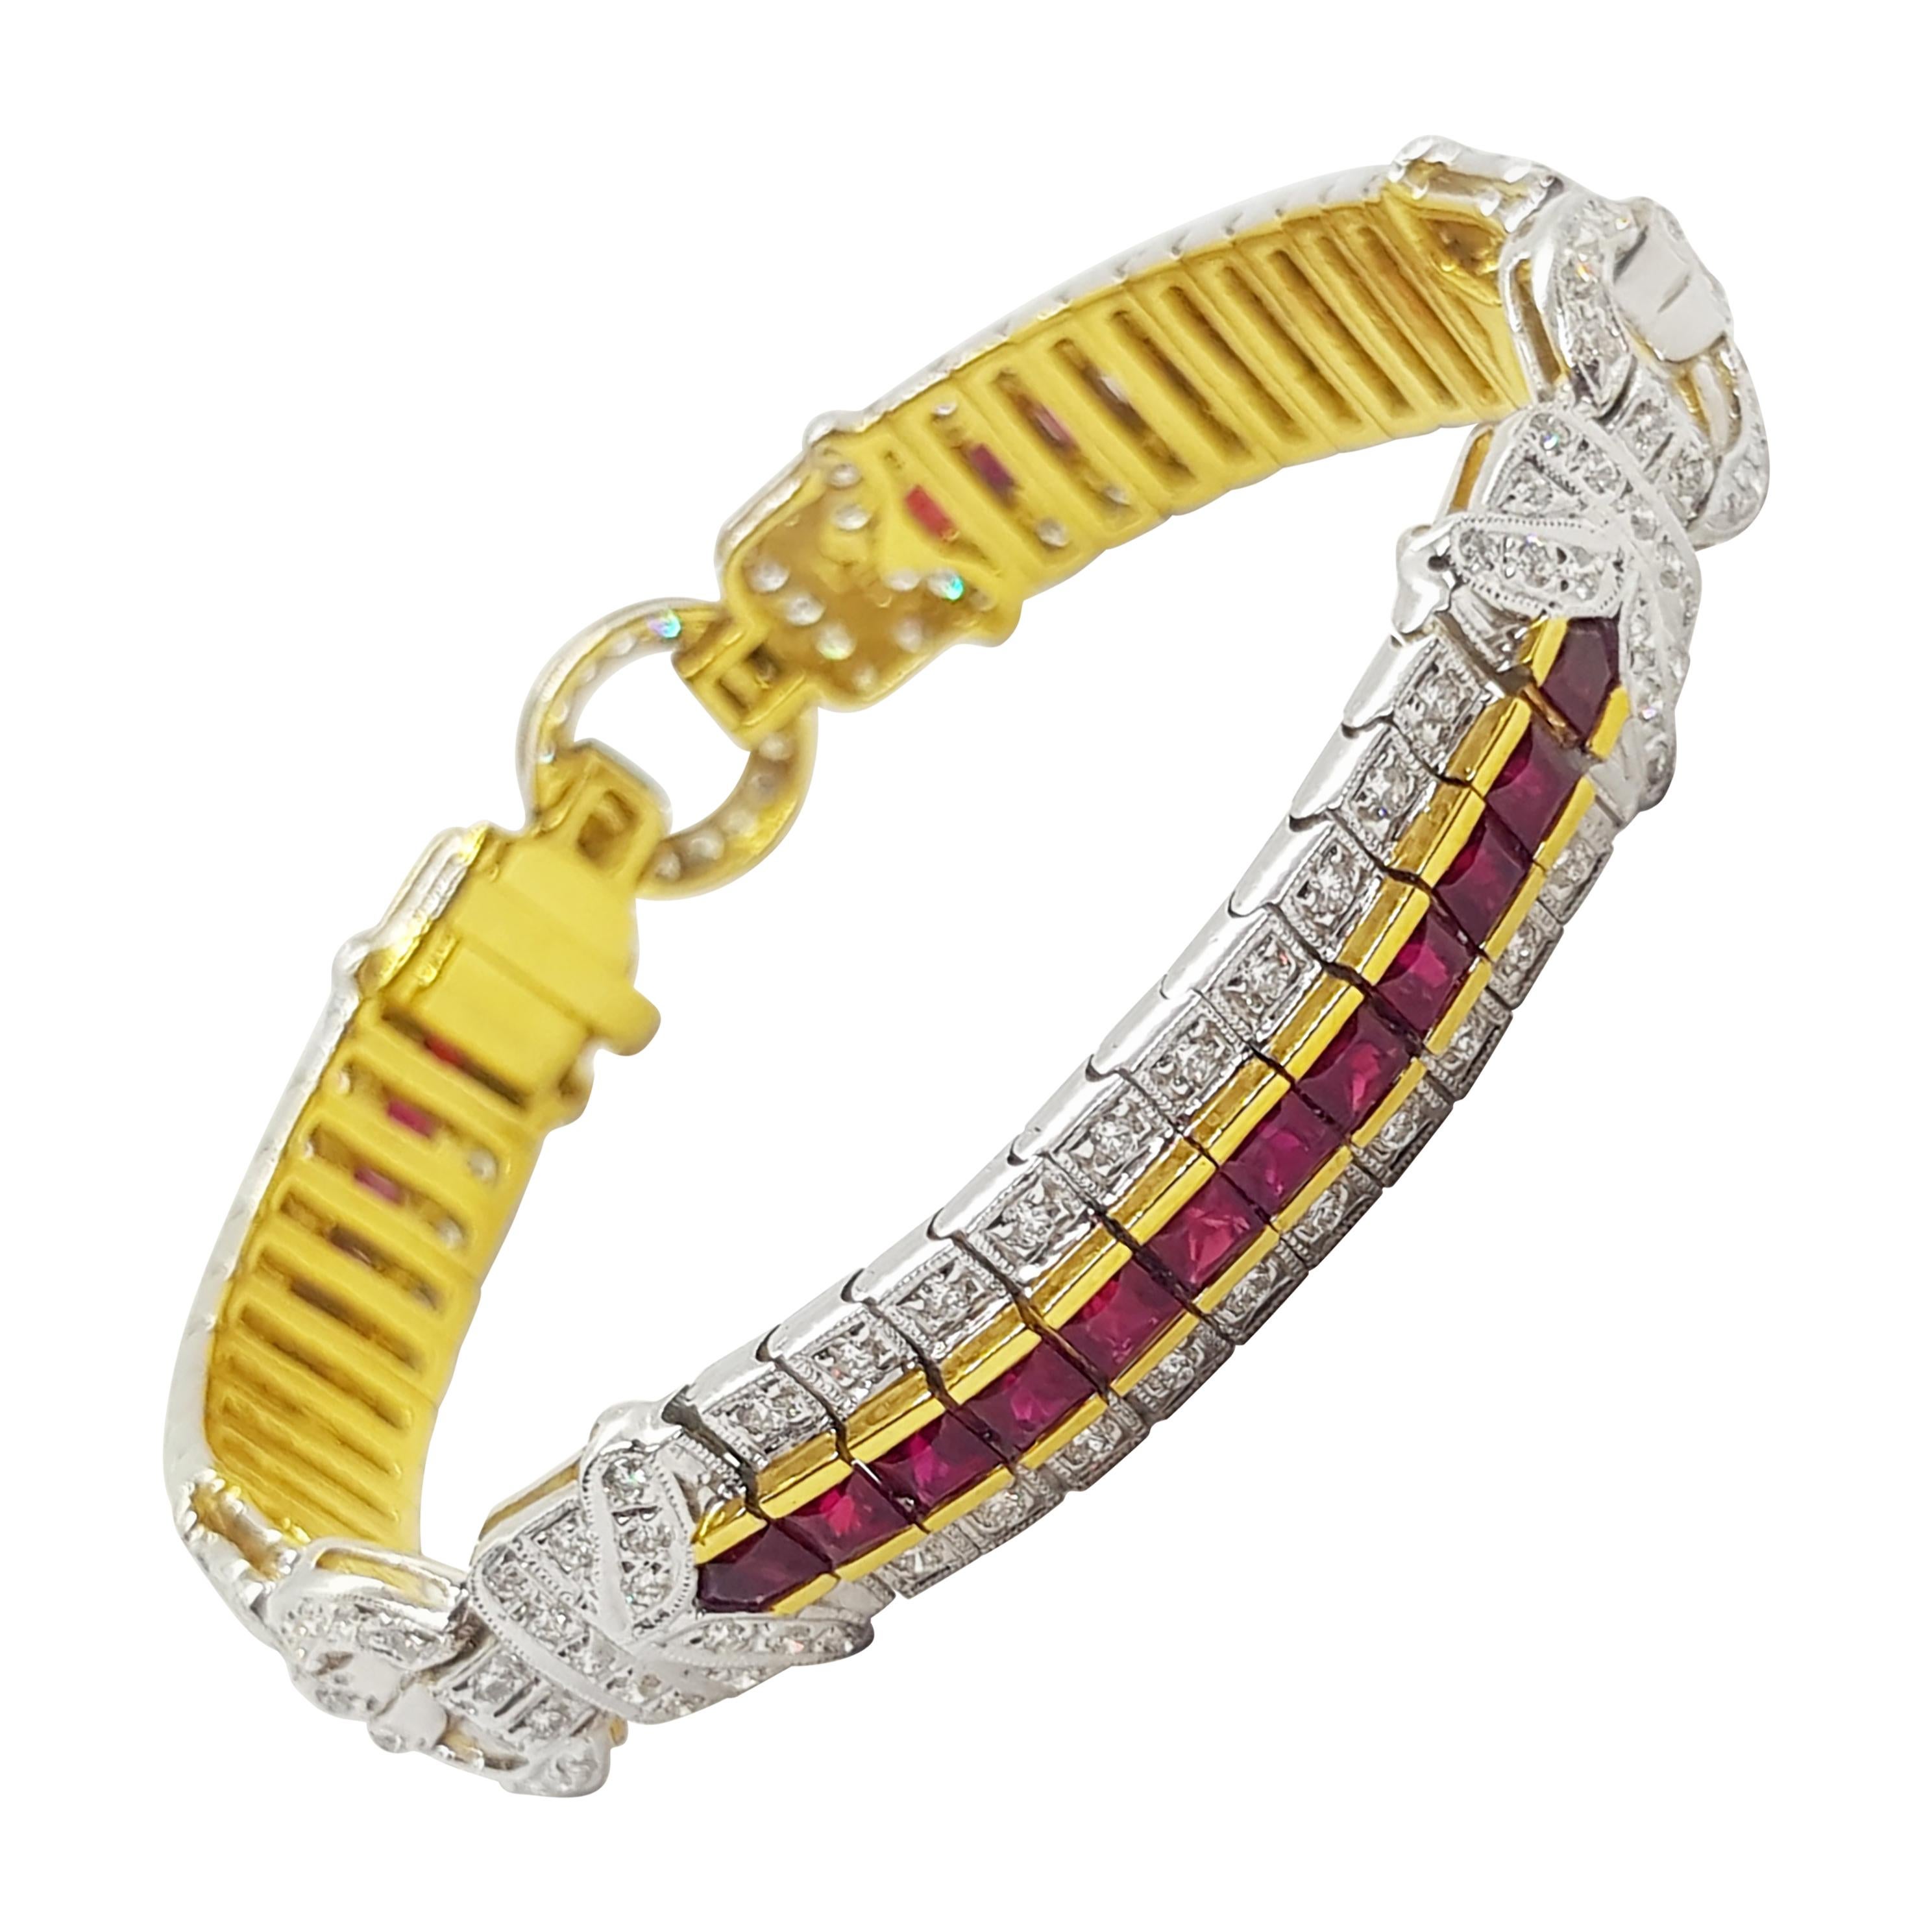 Bracelet en rubis et diamants sertis dans des montures en or 18 carats